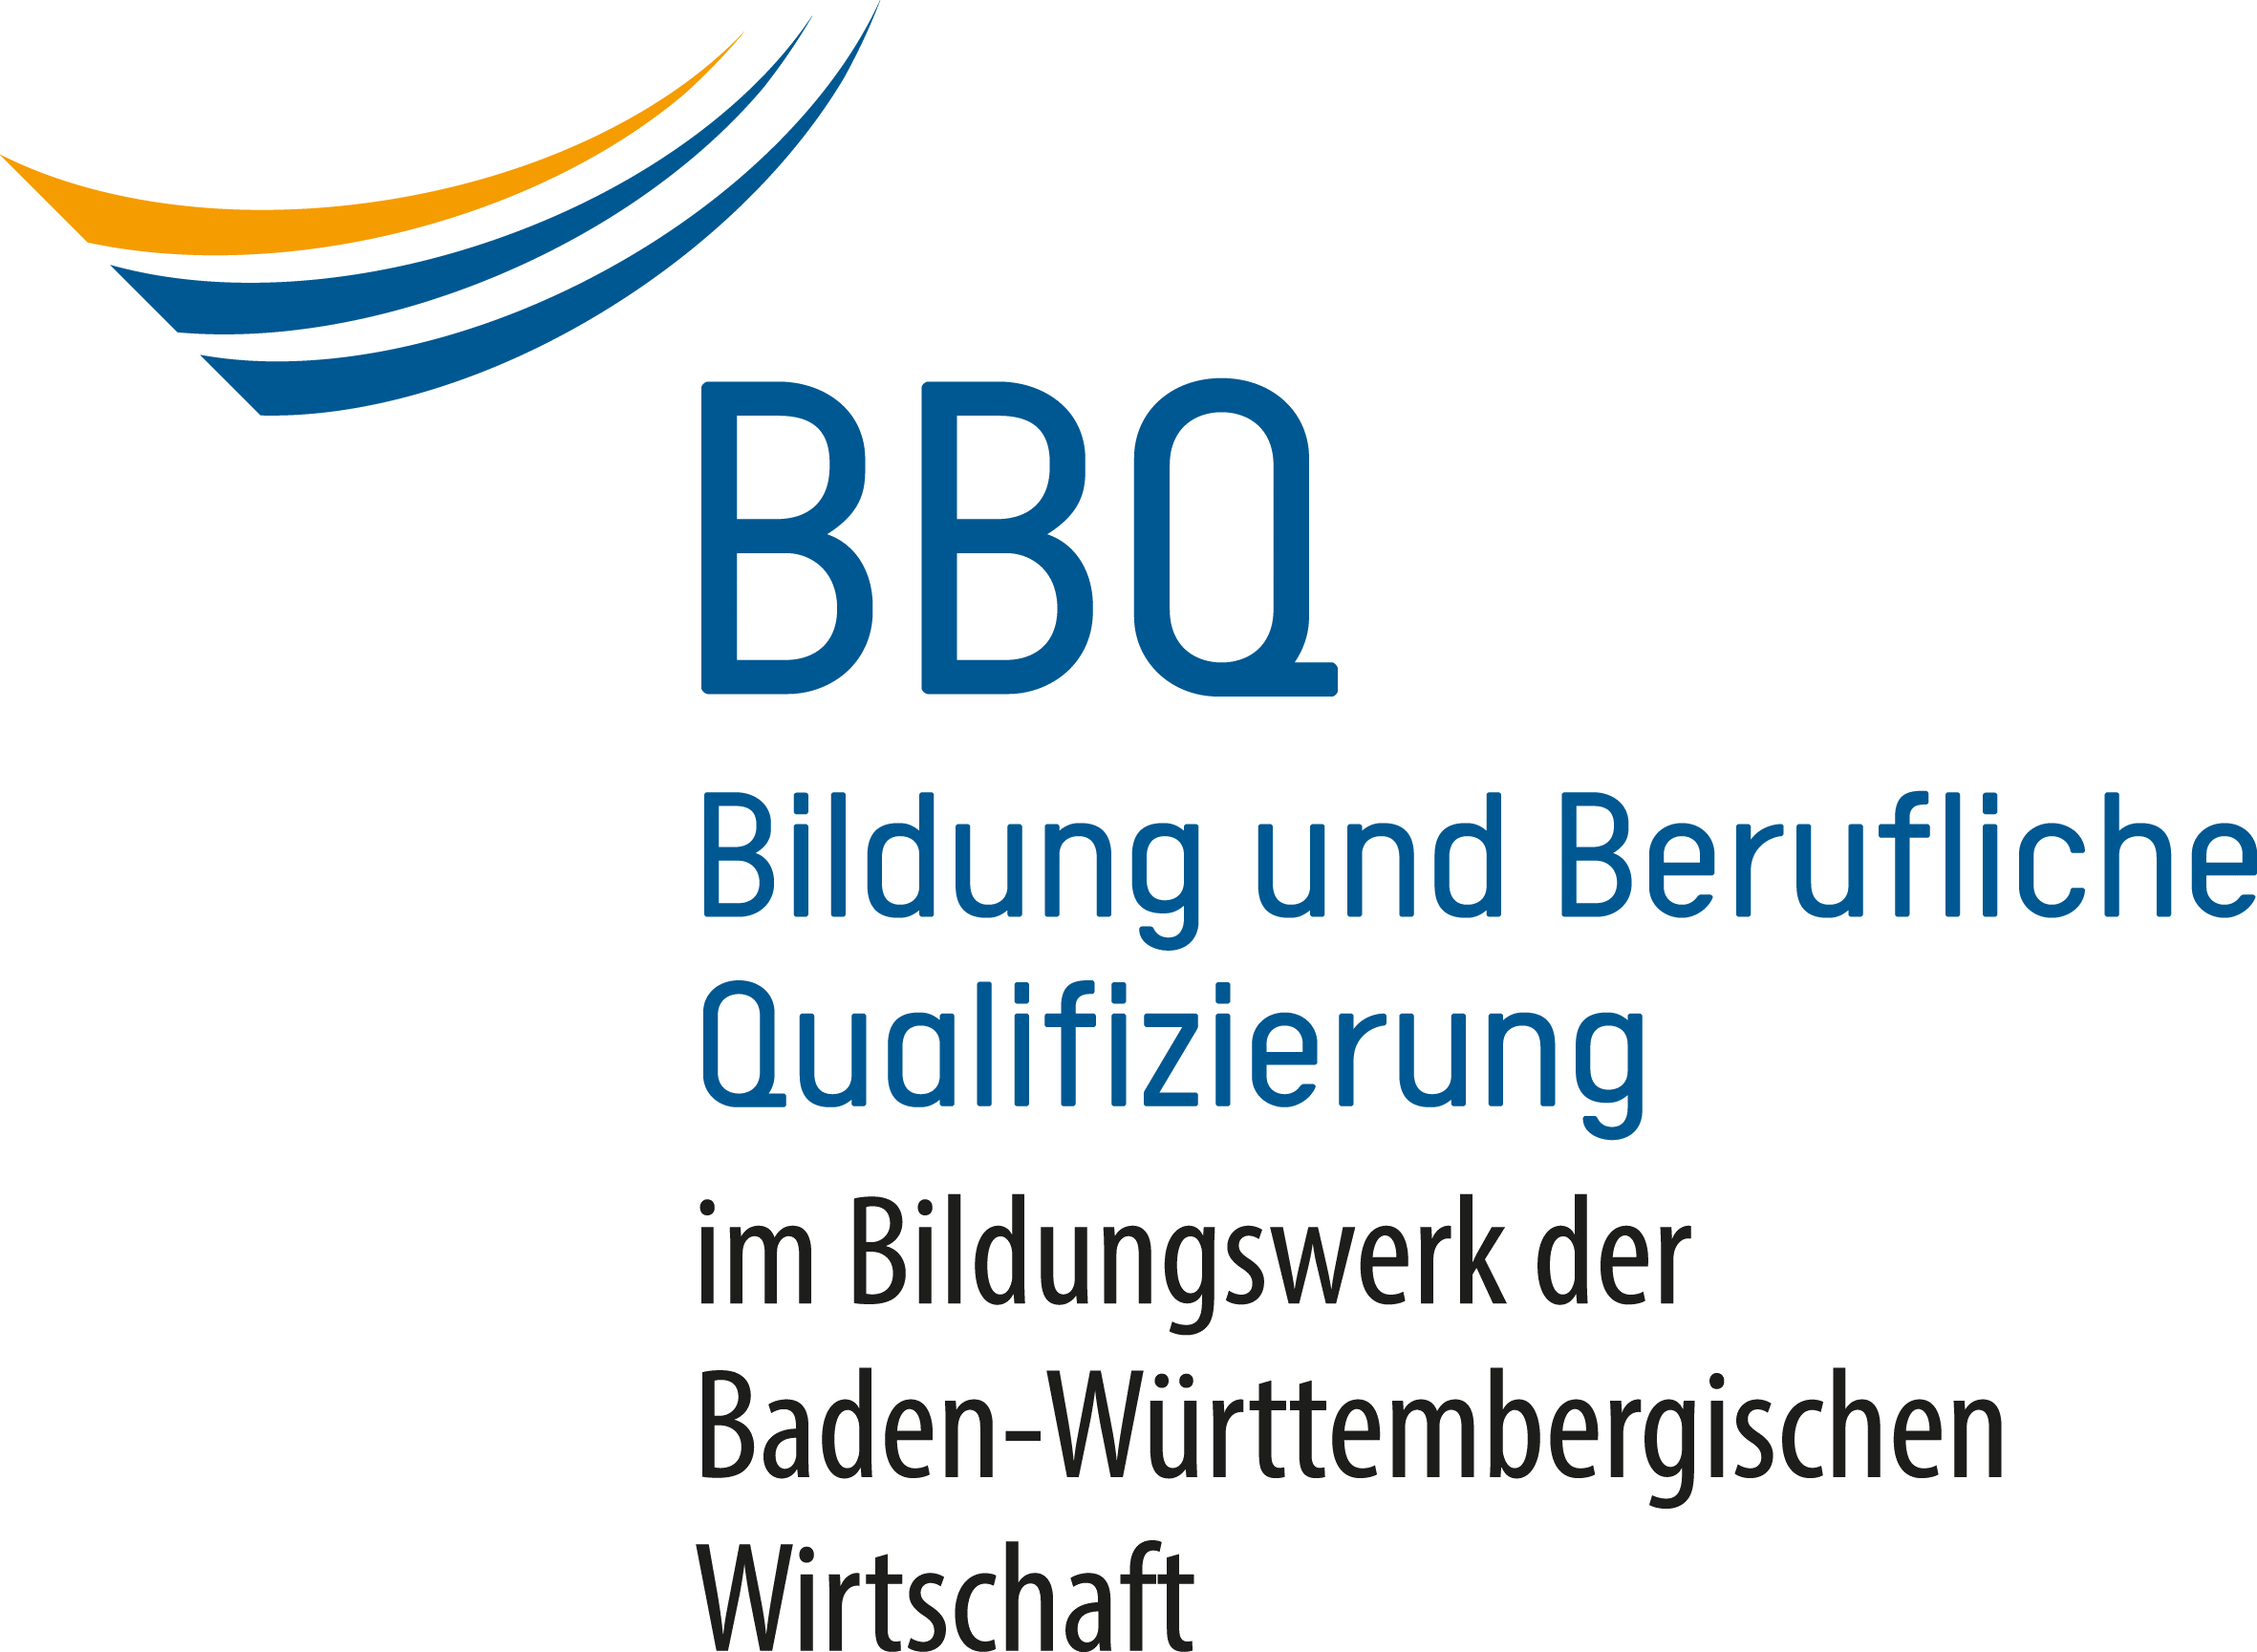 BBQ Bildung und Berufliche Qualifizierung gGmbH im Bildungswerk der Baden-Wrttembergischen Wirtschaft e.V.